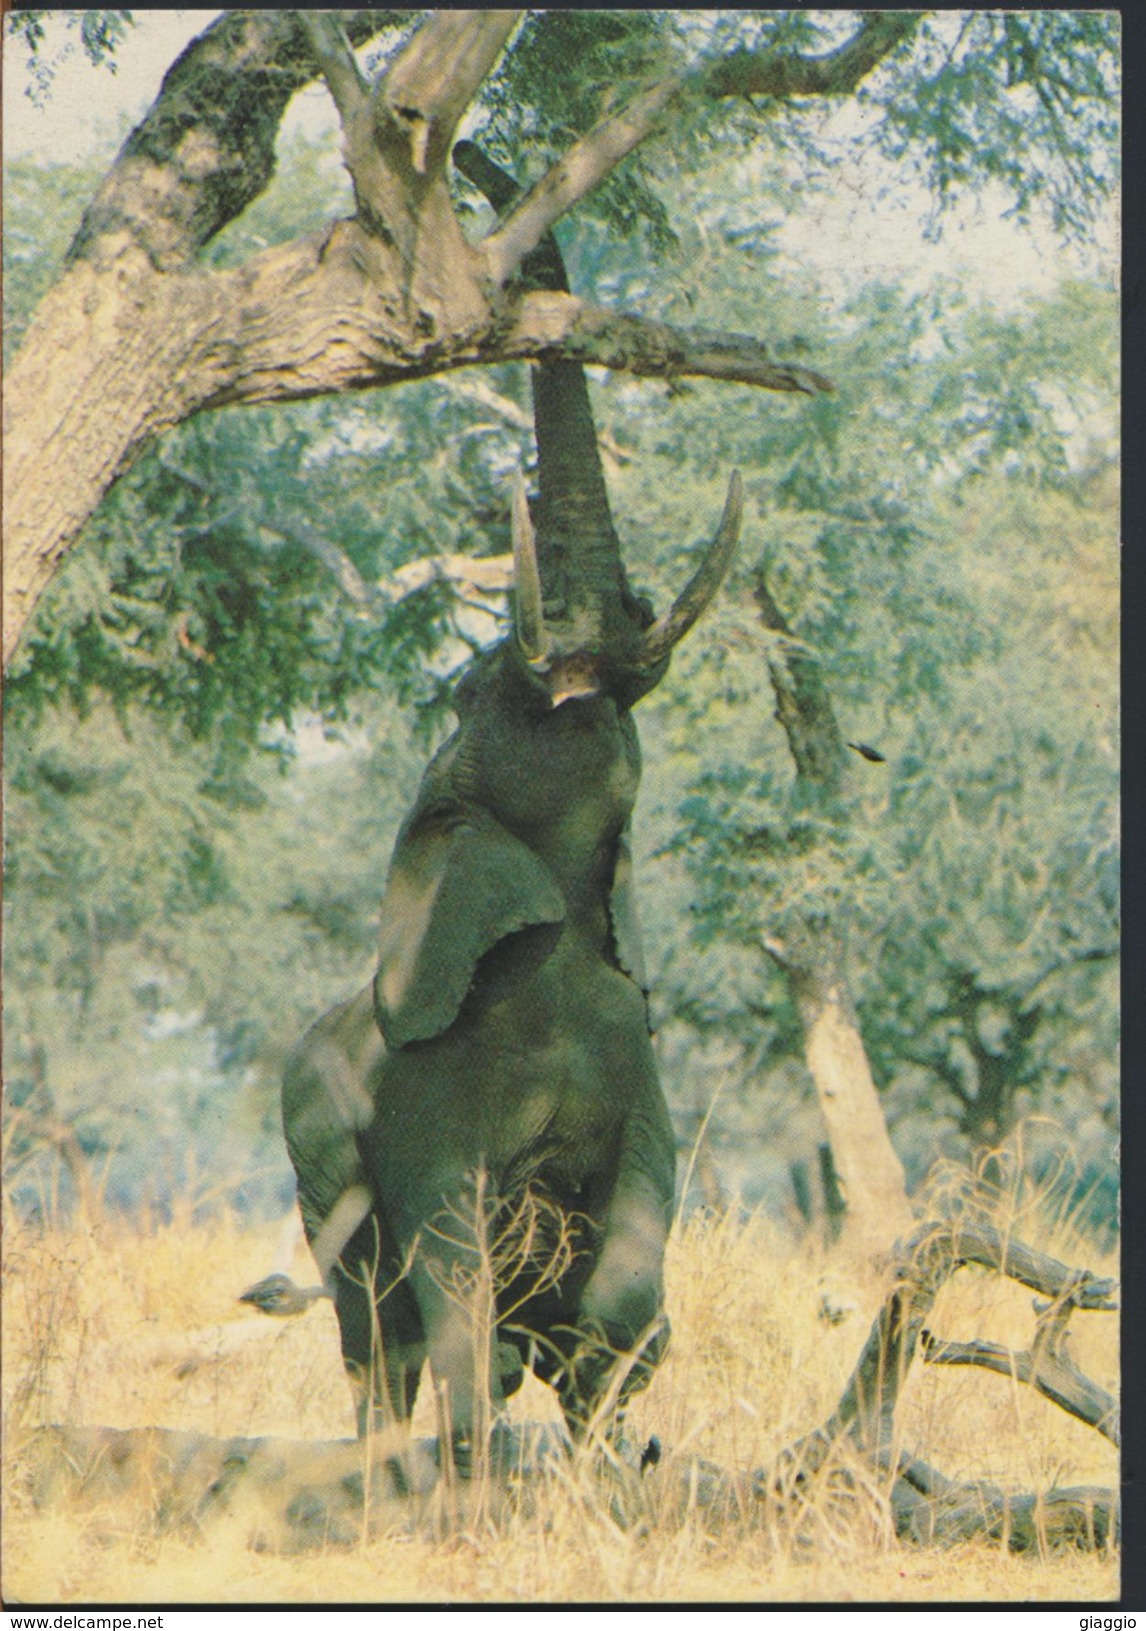 °°° 1665 - ZIMBABWE - ELEPHANT REACHING FOR A TASTY MORSEL - 1989 °°° - Zimbabwe